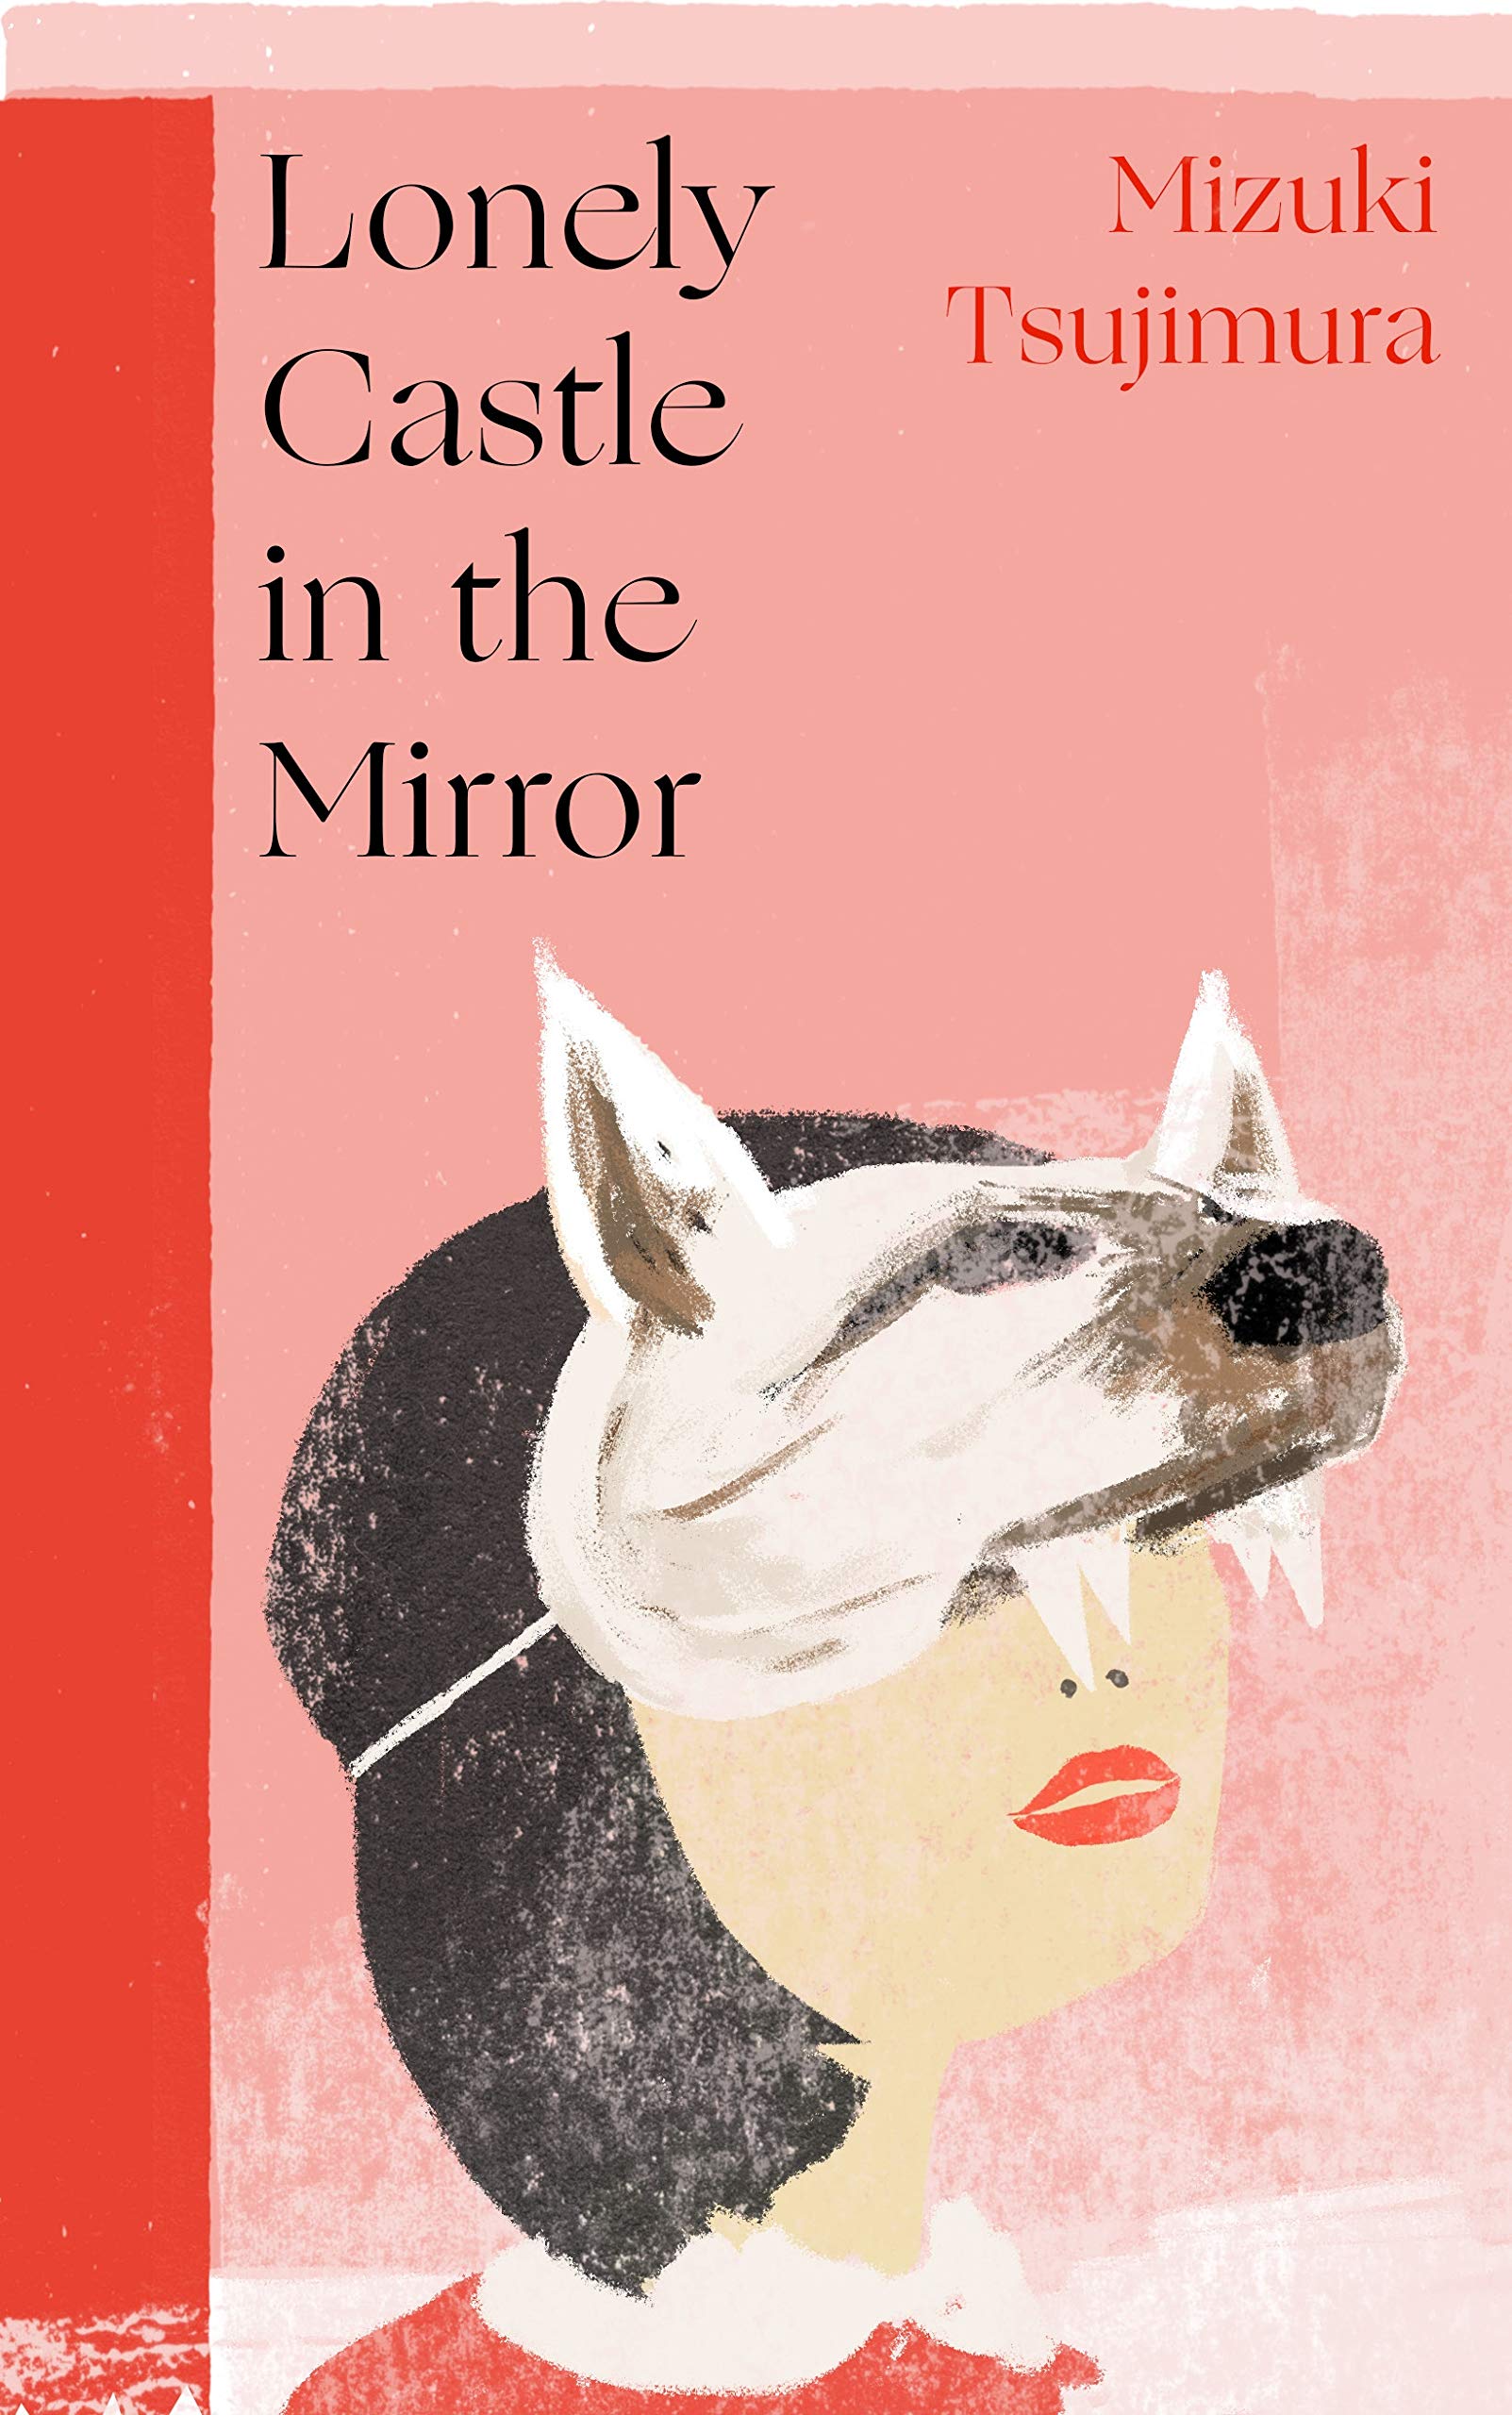 lonely castle in the mirror by Mizuki Tsujimura book cover